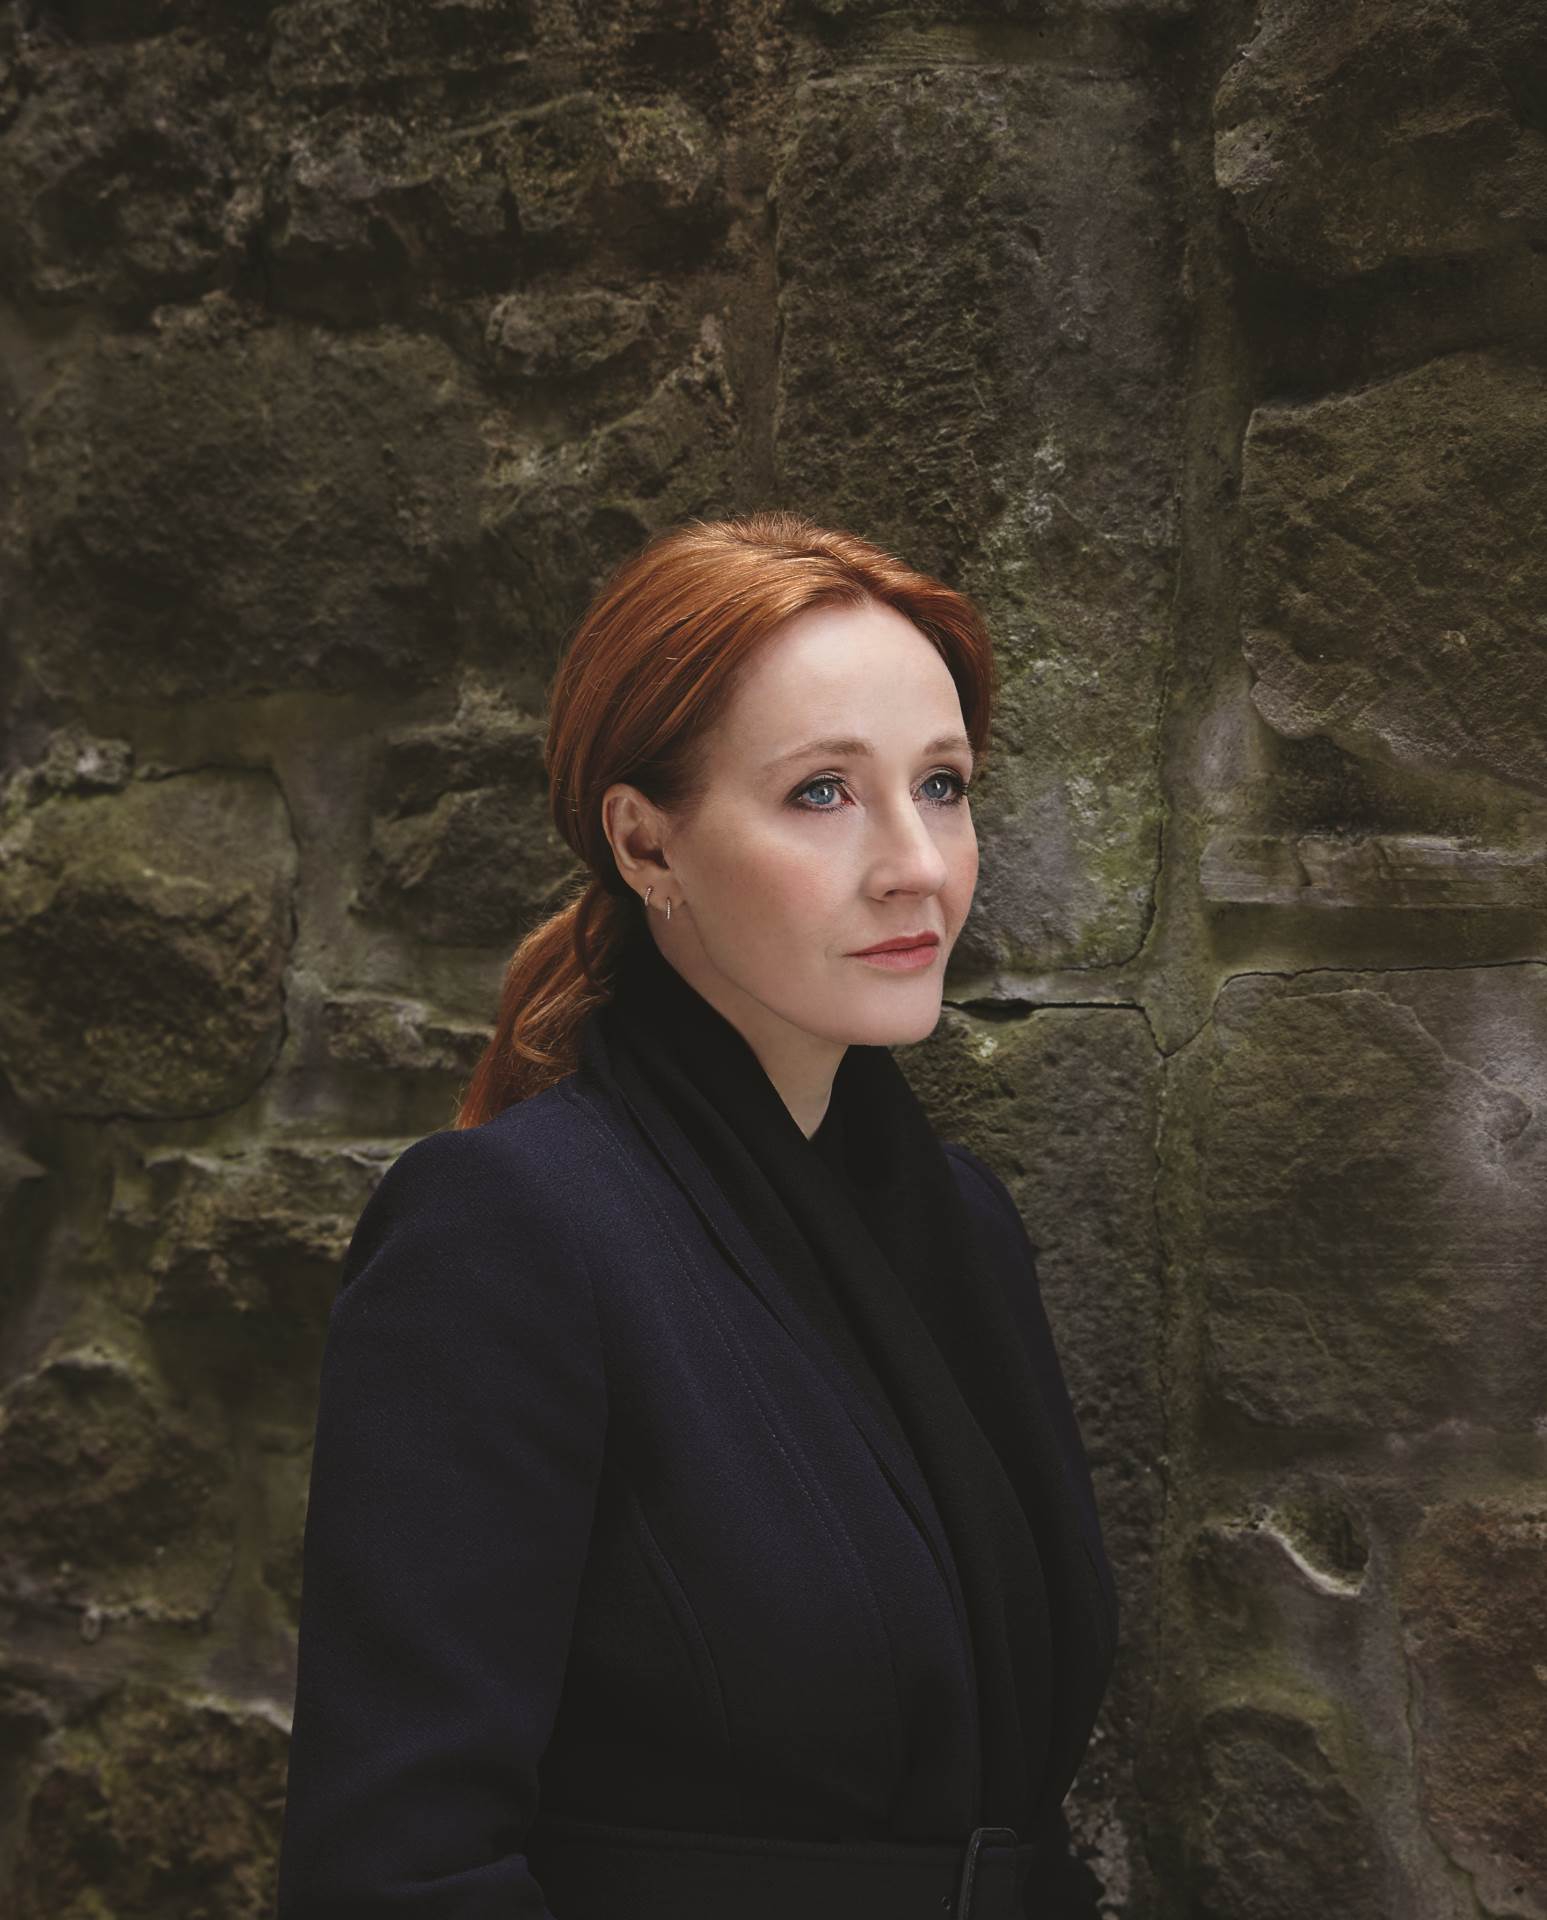 J. K. Rowling u ekskluzivnom intervjuu: 'Promjene su ono što me pokreće'